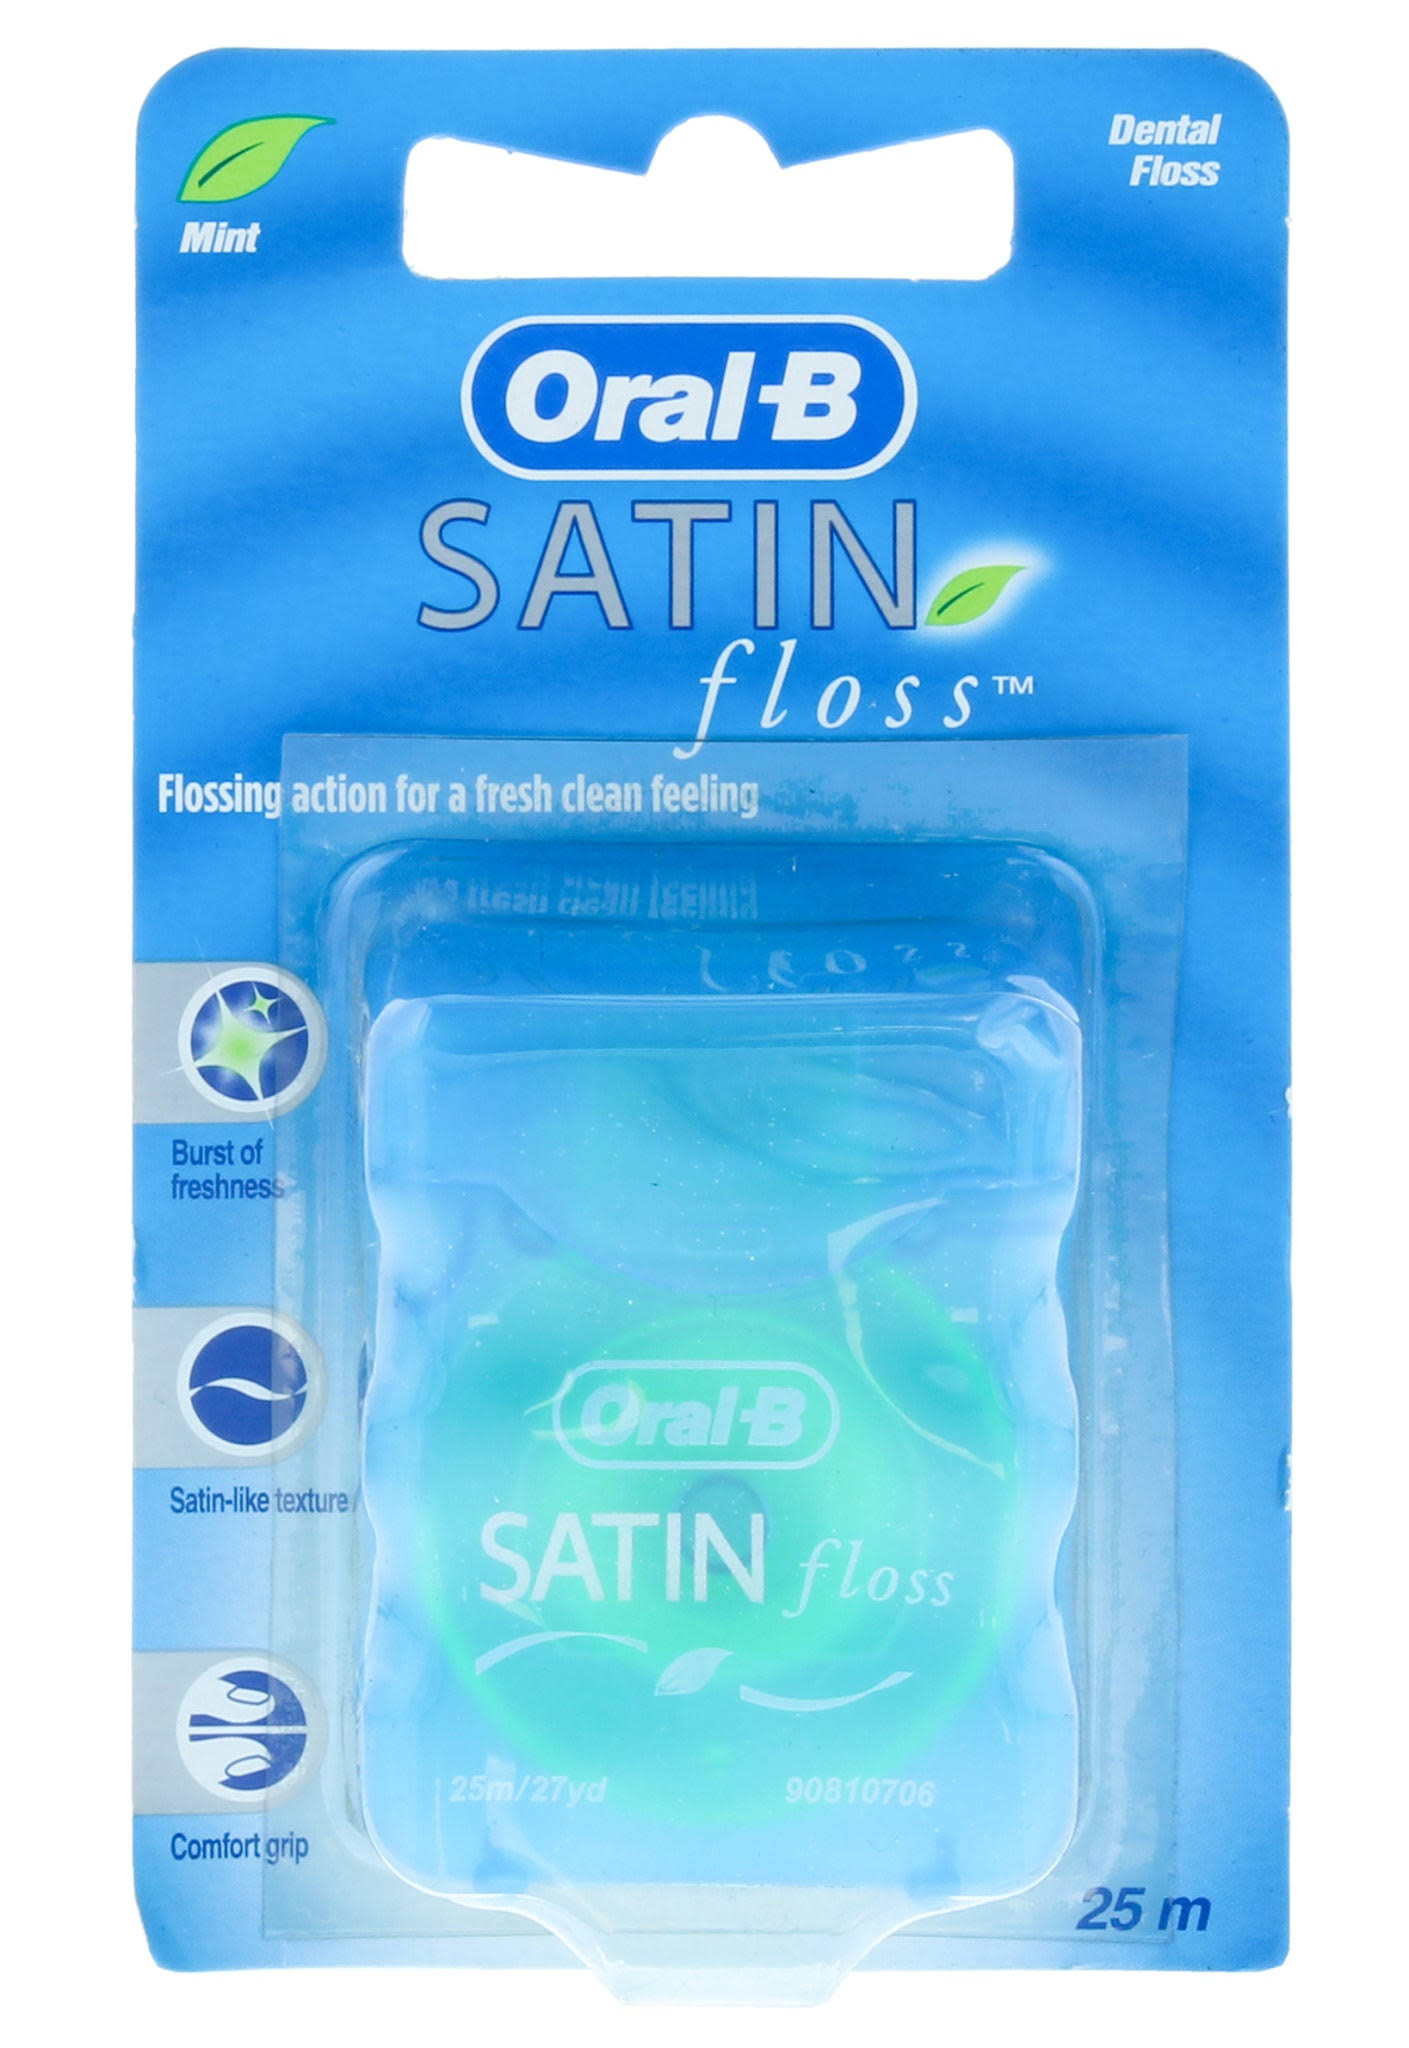 Oral-B Satin Dental Floss - 25m, Mint